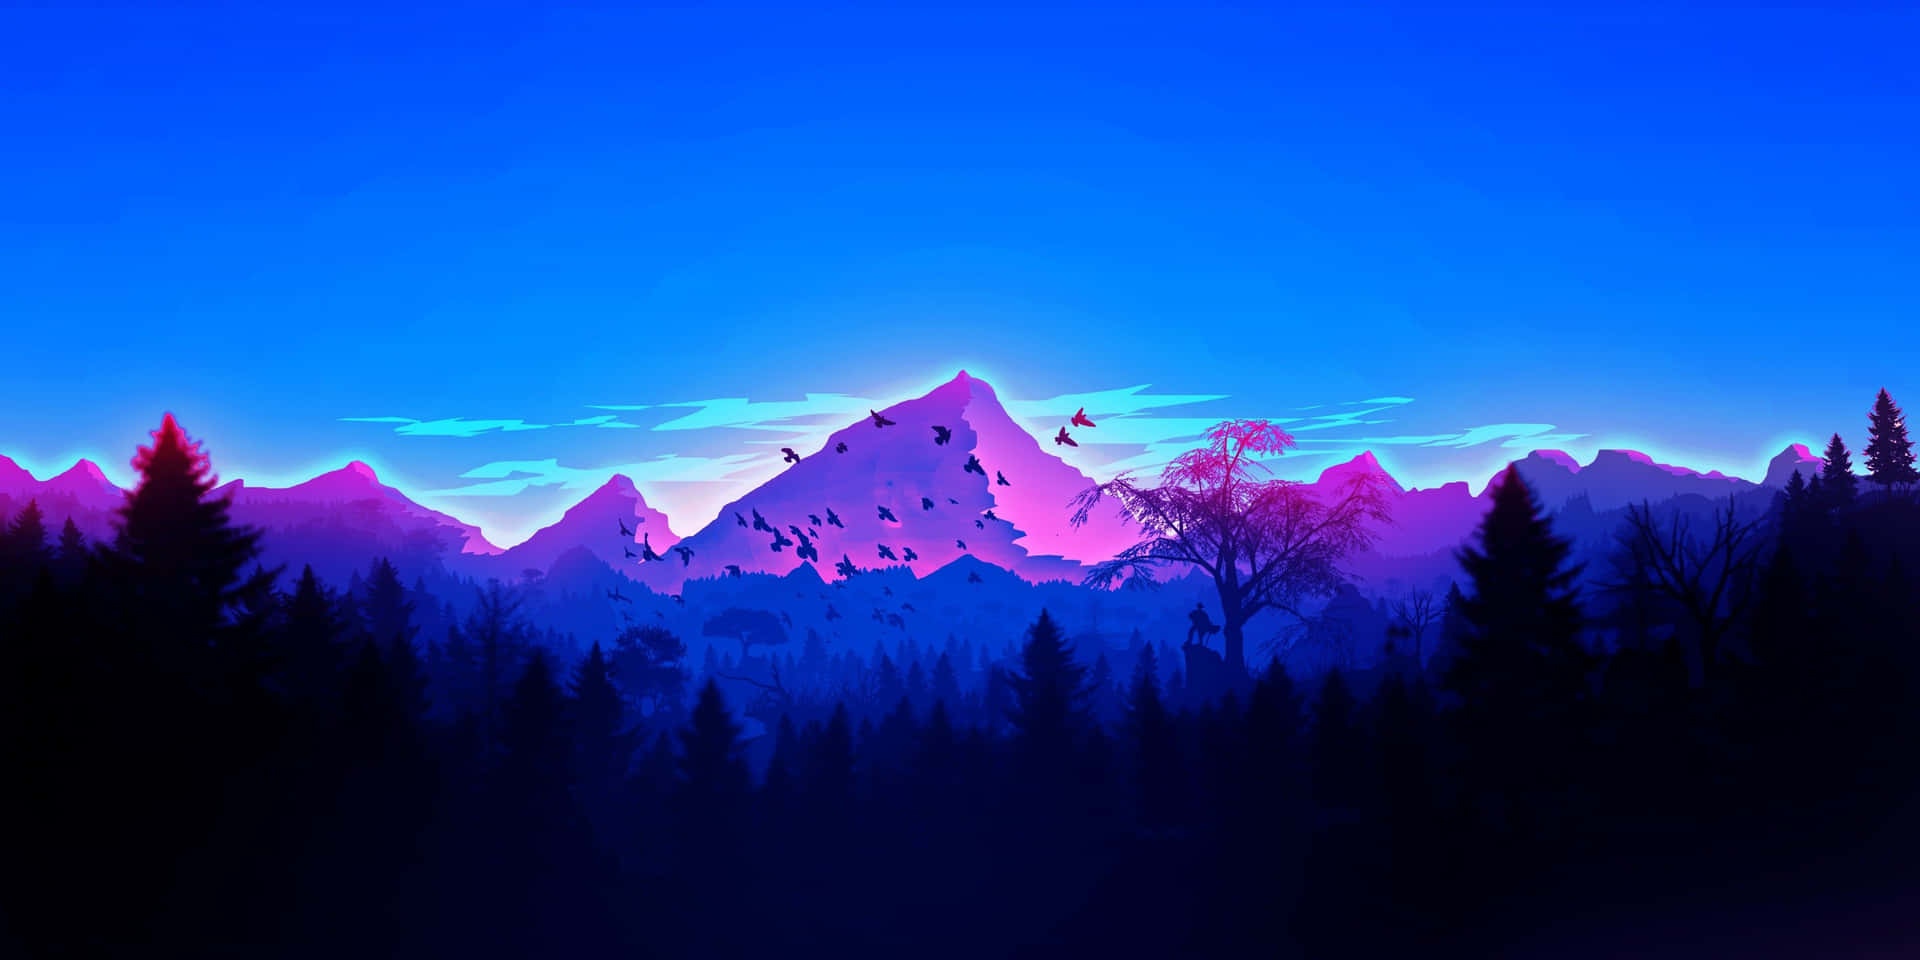 Caption: Majestic Blue Mountains Landscape Wallpaper